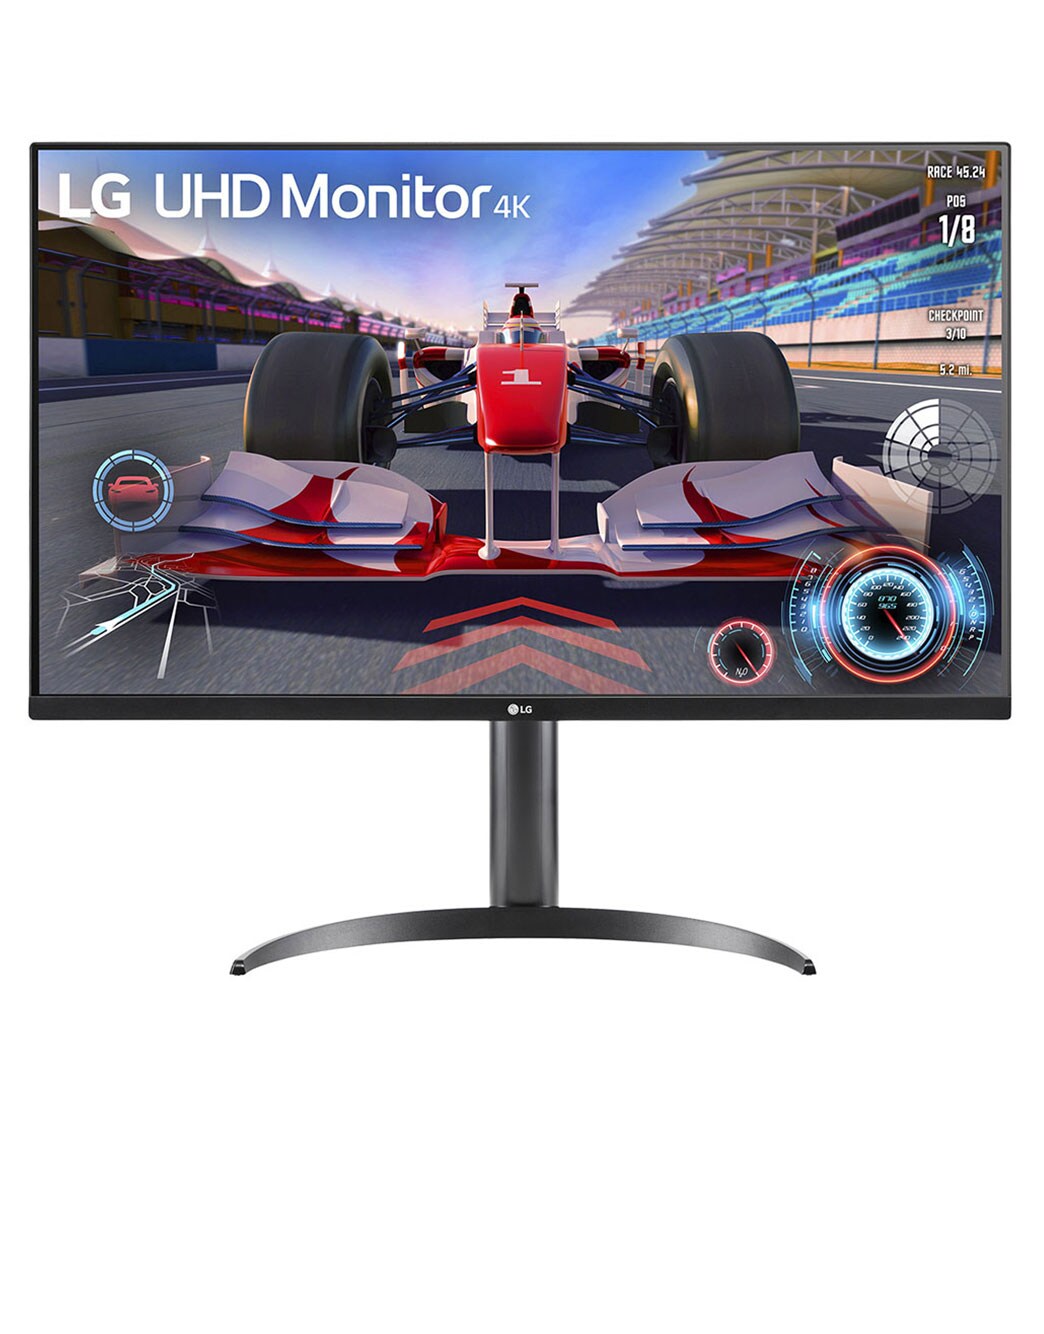 31.5'' UHD 4K HDR monitor